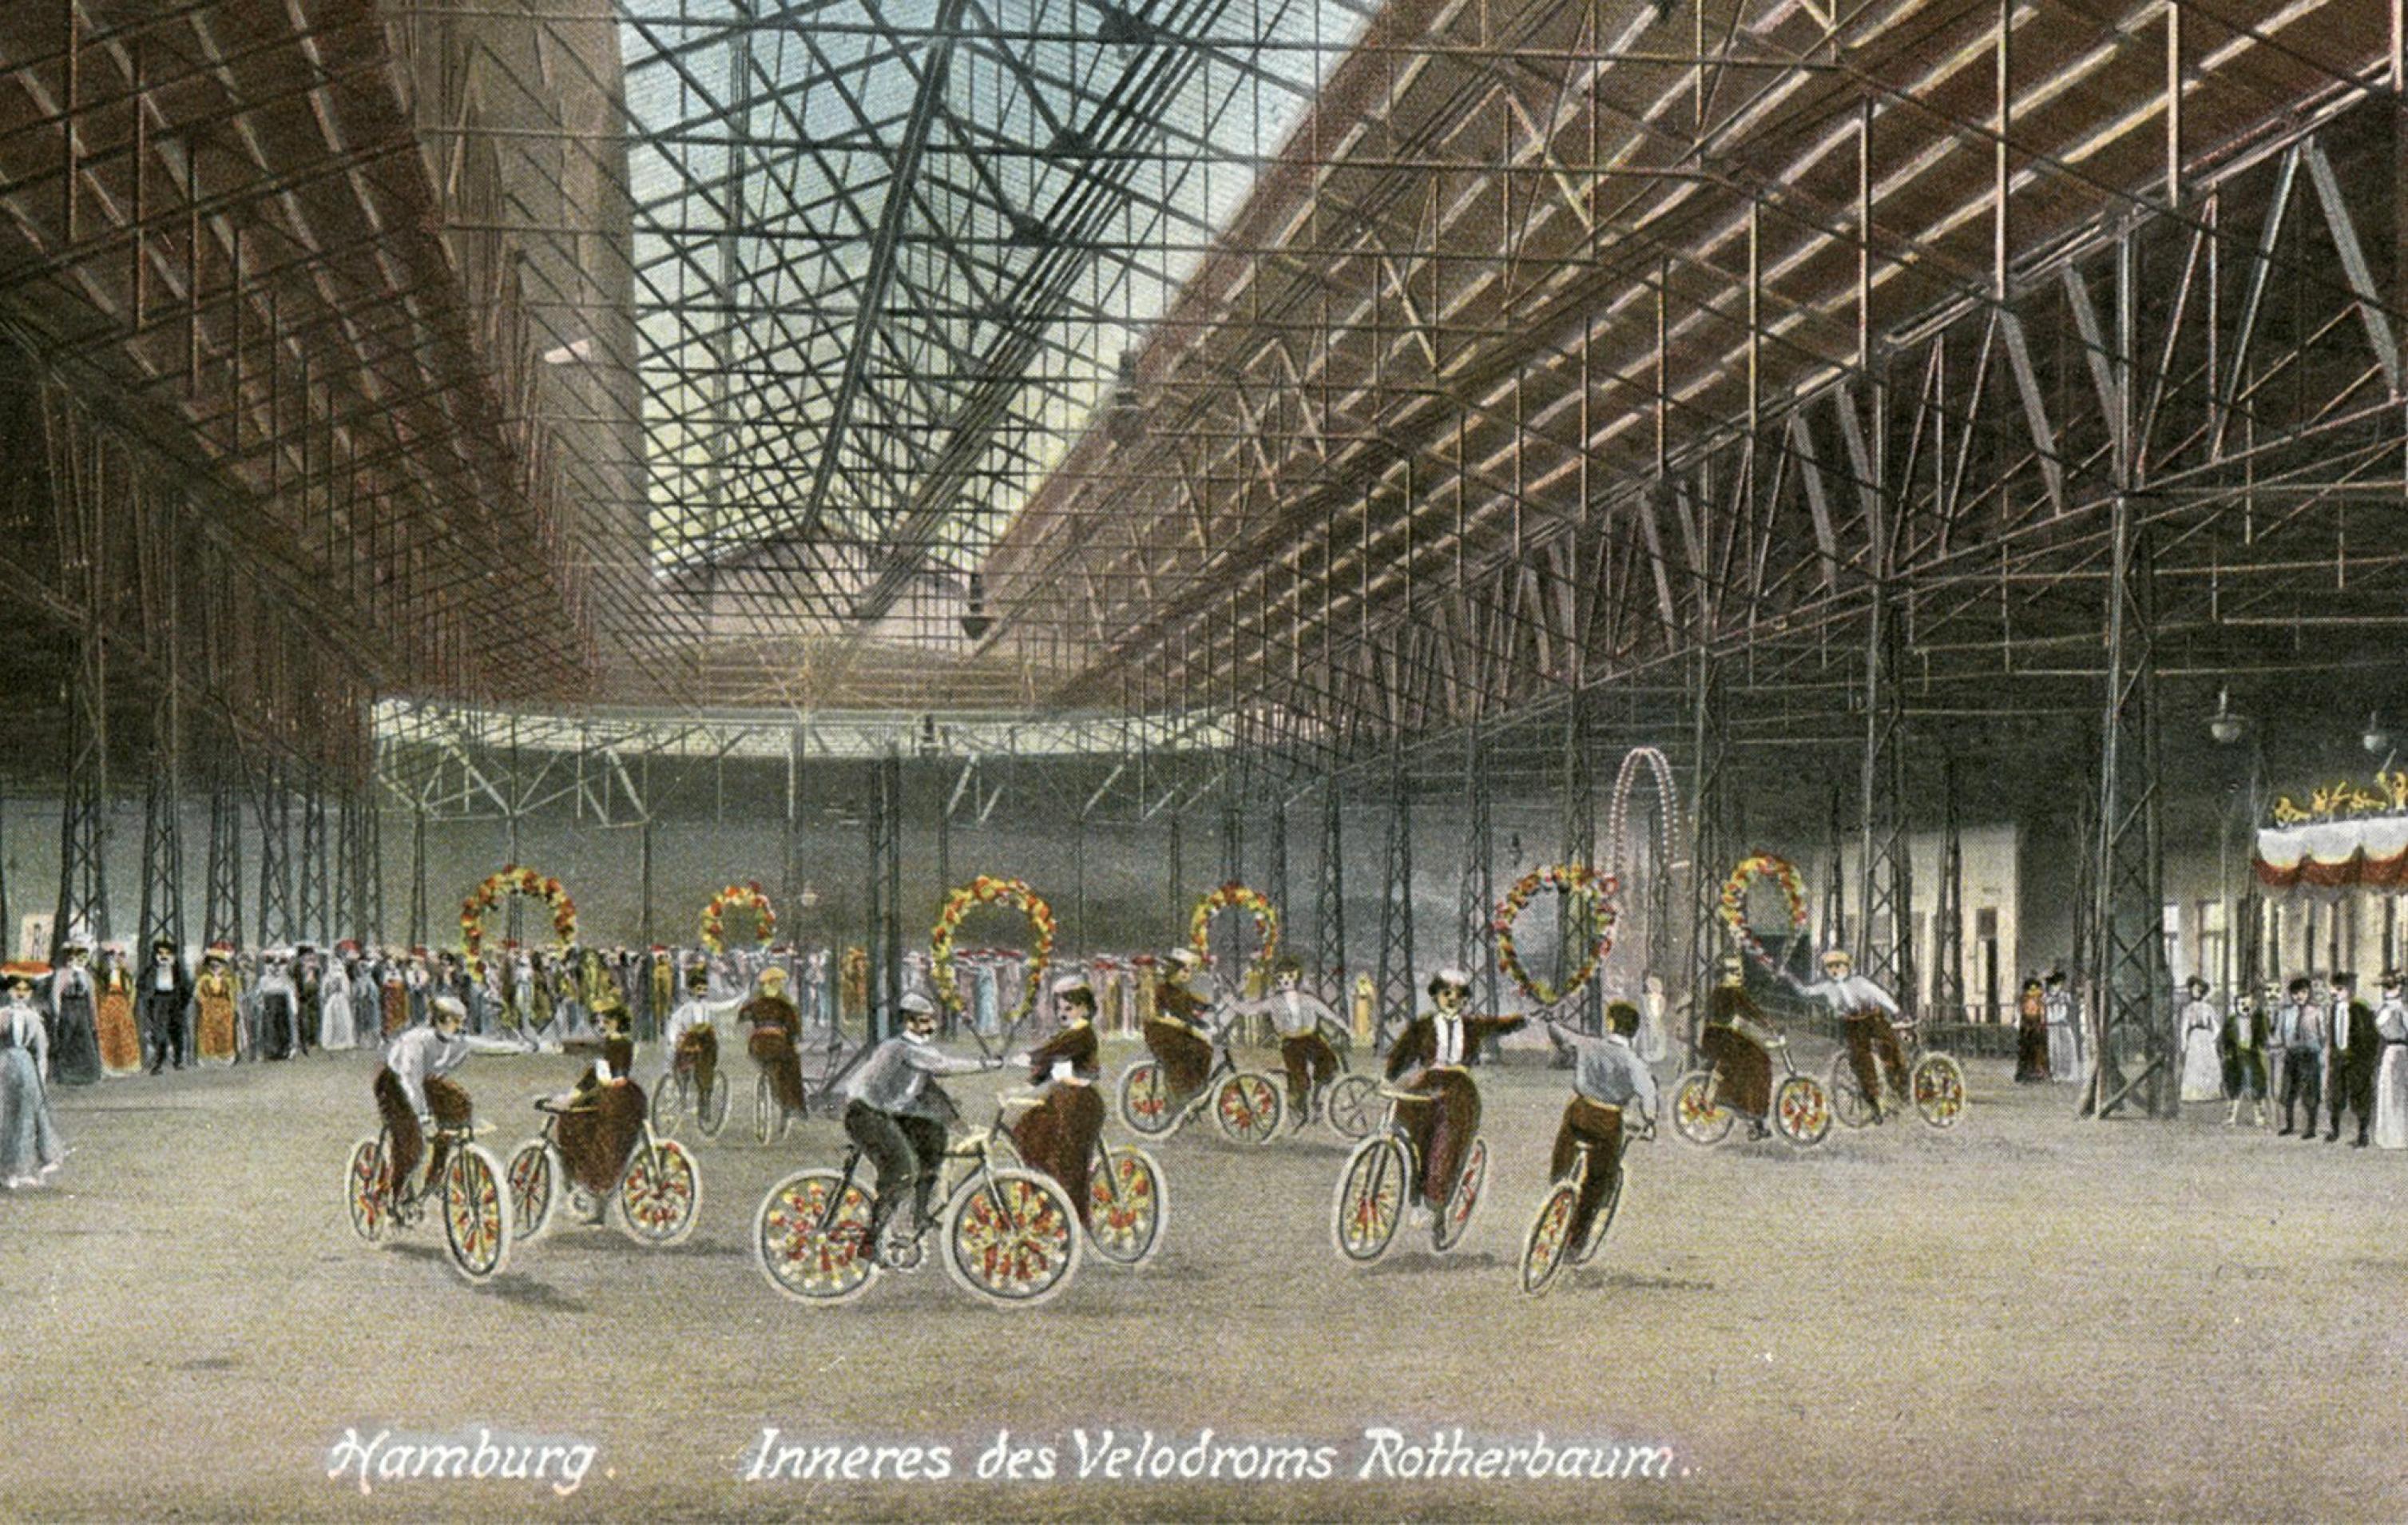 Die im leicht impressionistischen Stil gemalte Radfahrszene zeigt das Innere des hallenartigen Velodroms, in dem Rad fahrende Paar eine Art Ringelrei aufführen.